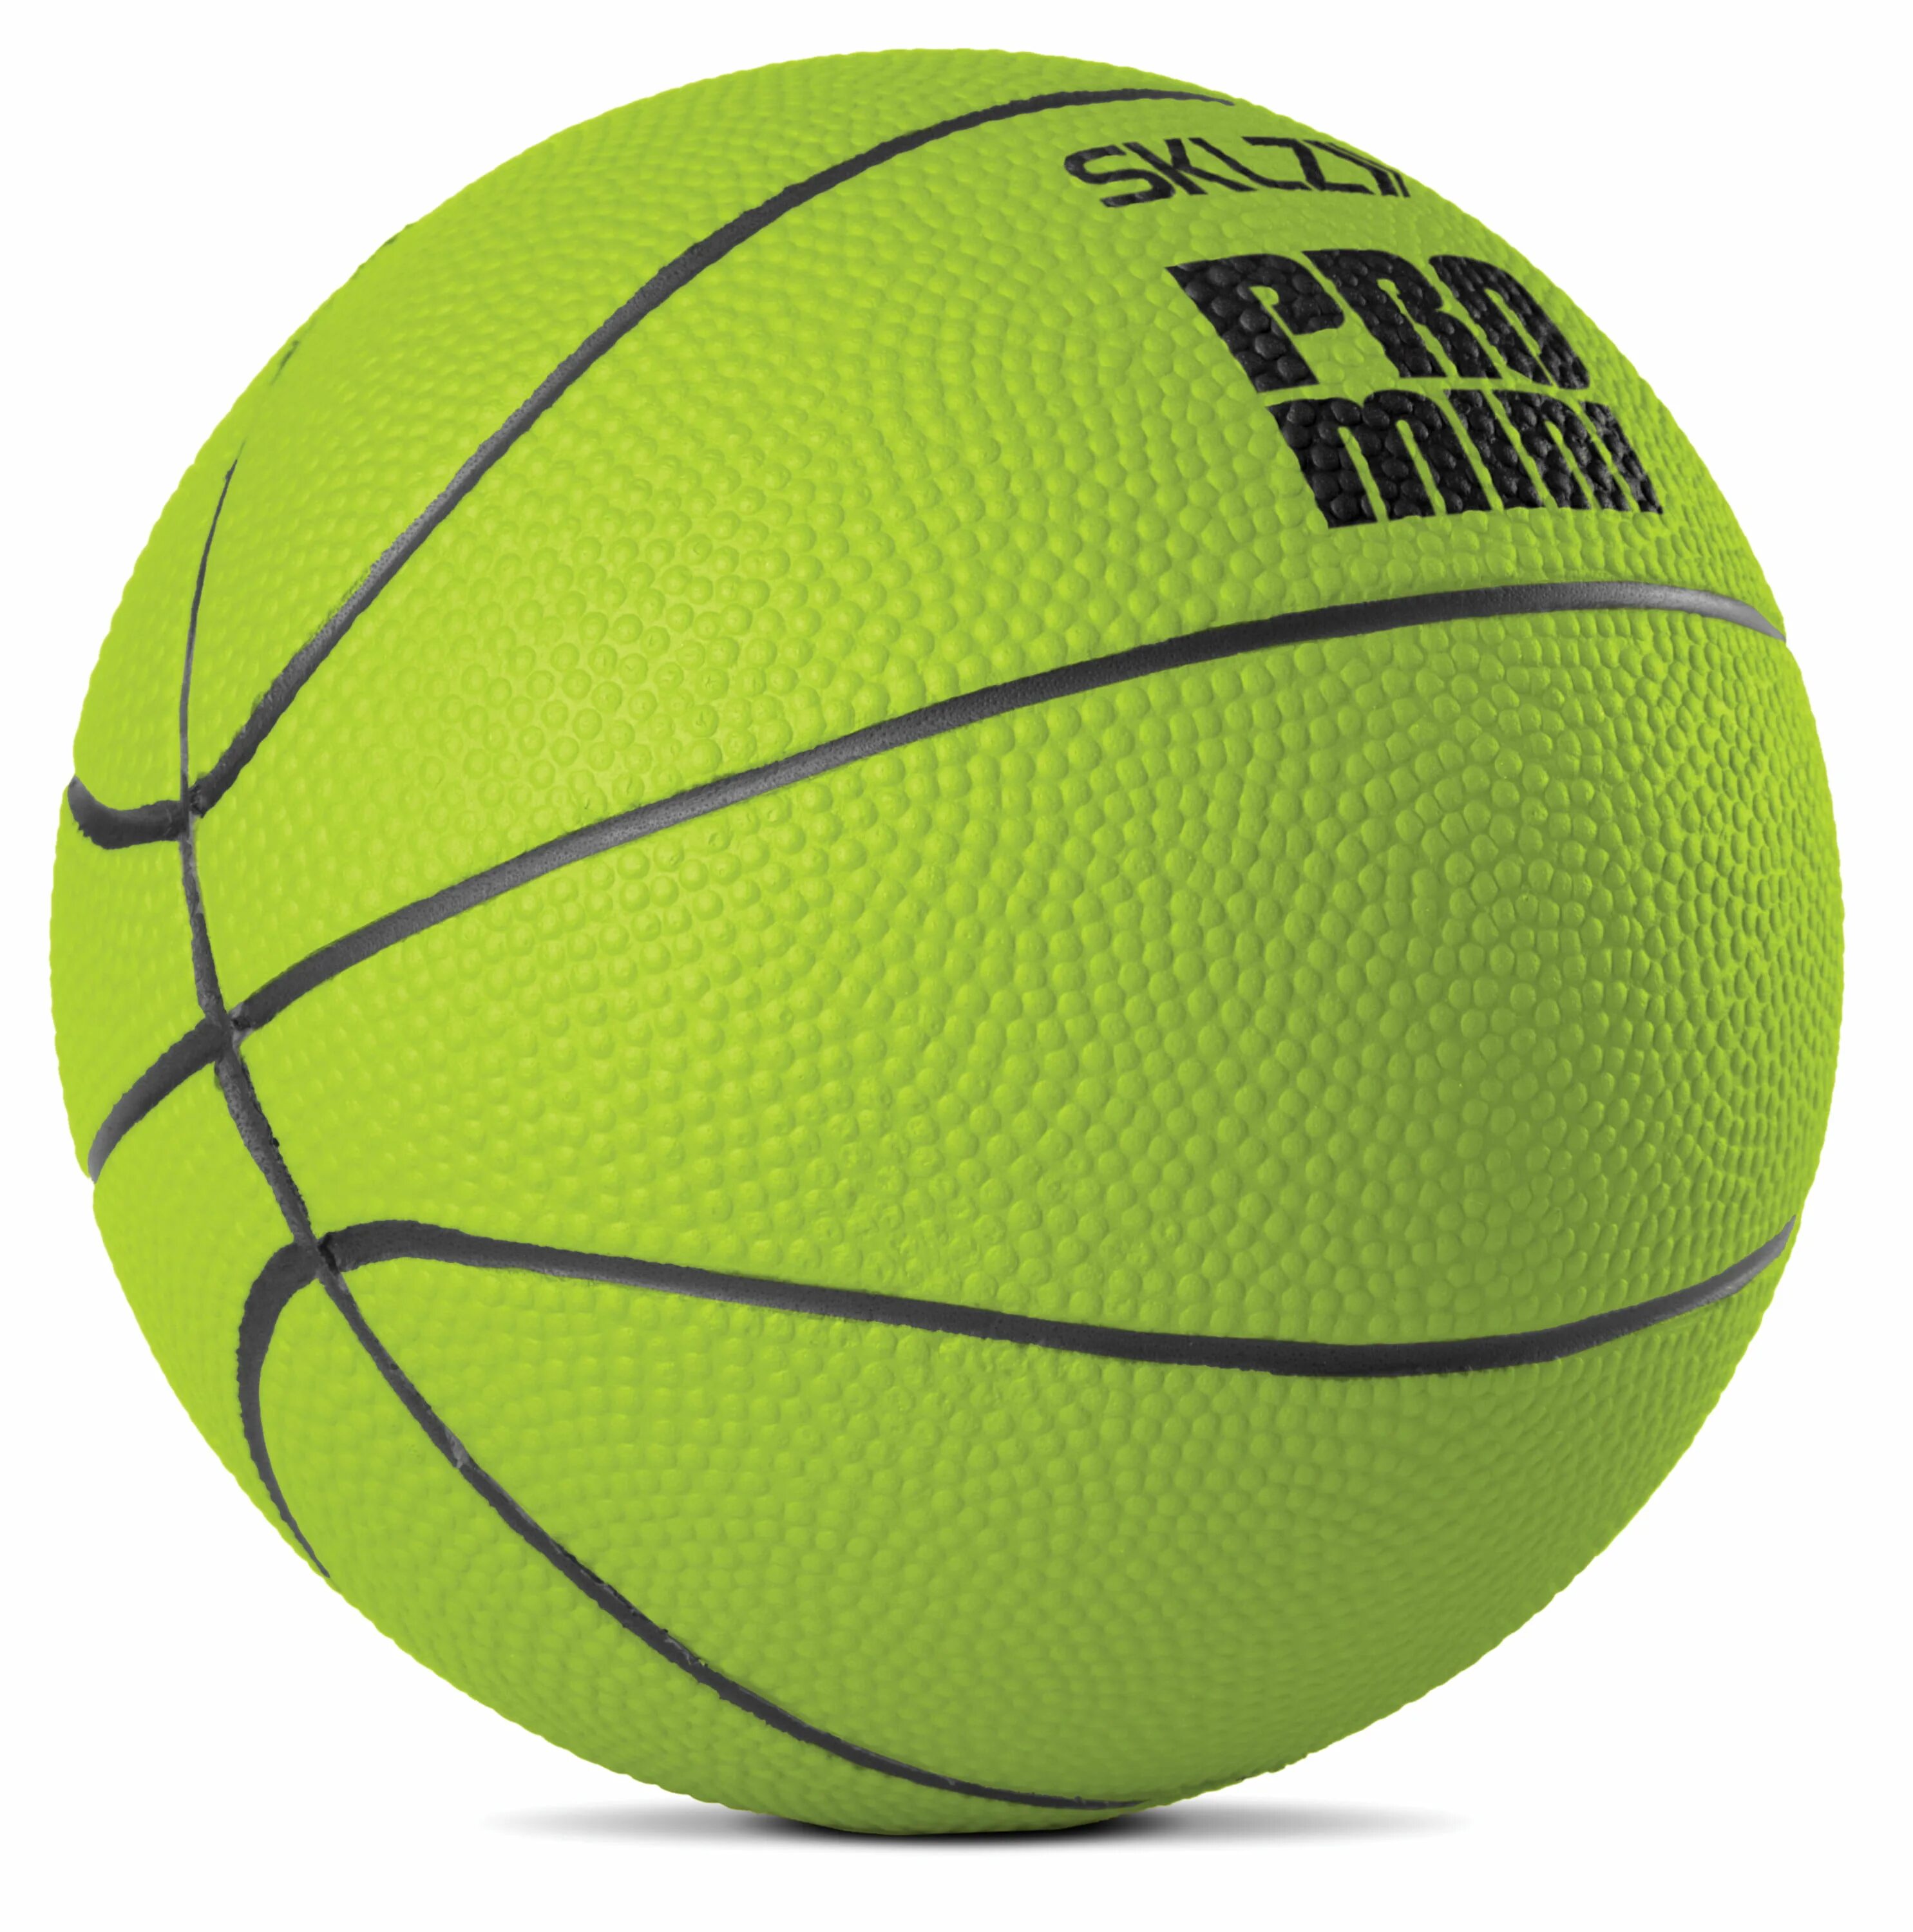 Спортивные магазины баскетбольные мячи. Мяч Hoop Pro Hoop SKLZ Mini. Салатовый баскетбольный мяч Jordan зеленый. Баскетбольный мяч under Armour.